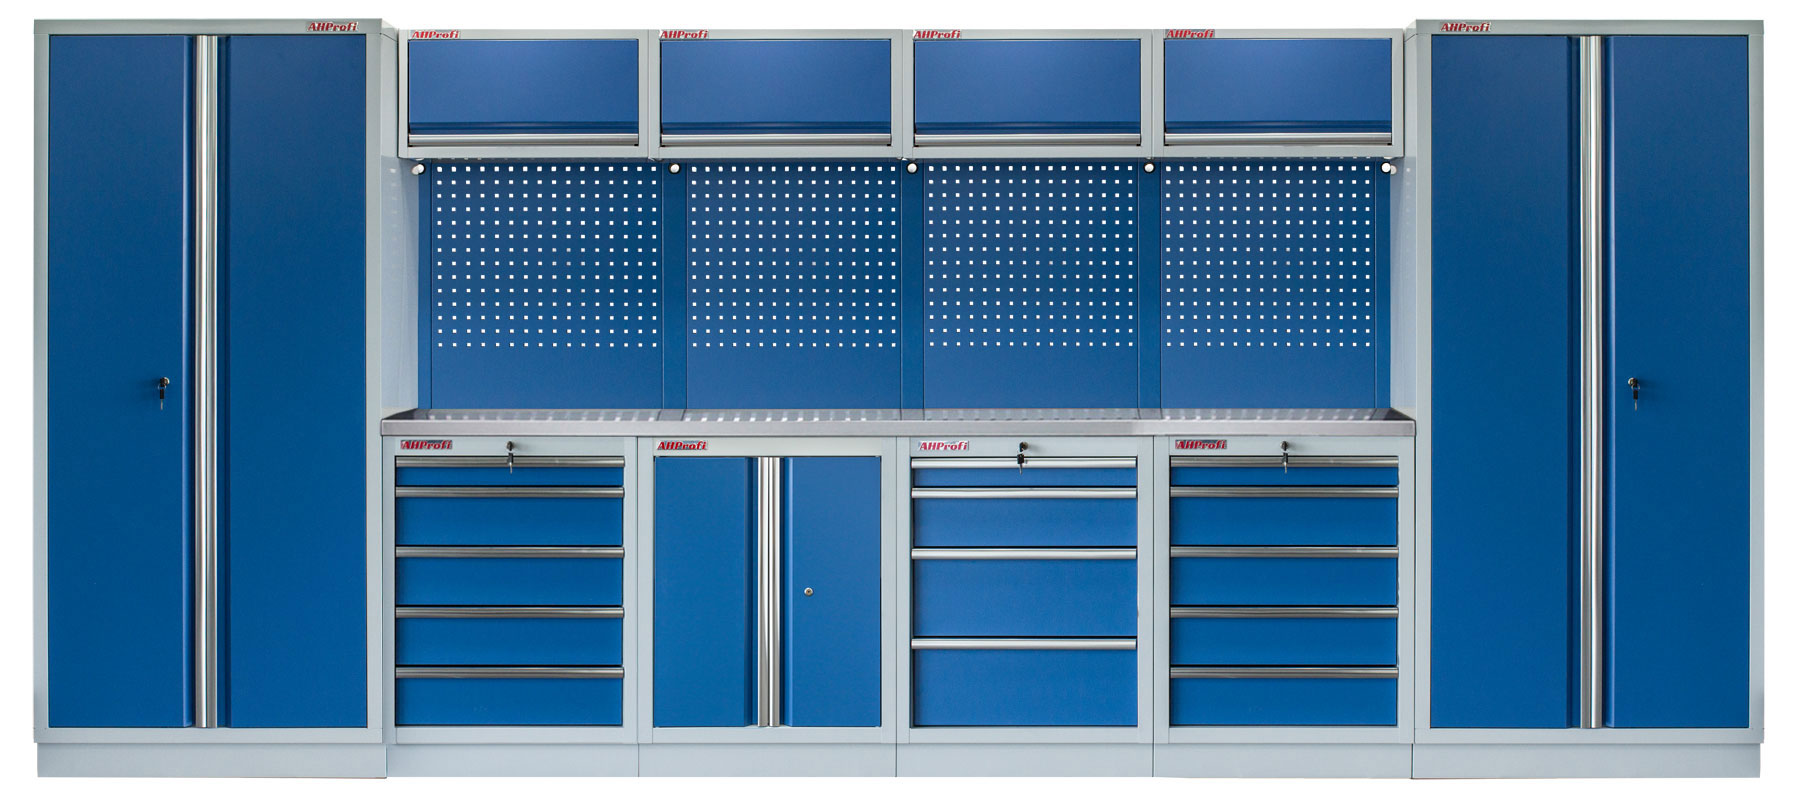 Kvalitní PROFI BLUE dílenský nábytek - 4535 x 2000 x 495 mm - MTGS1300AP